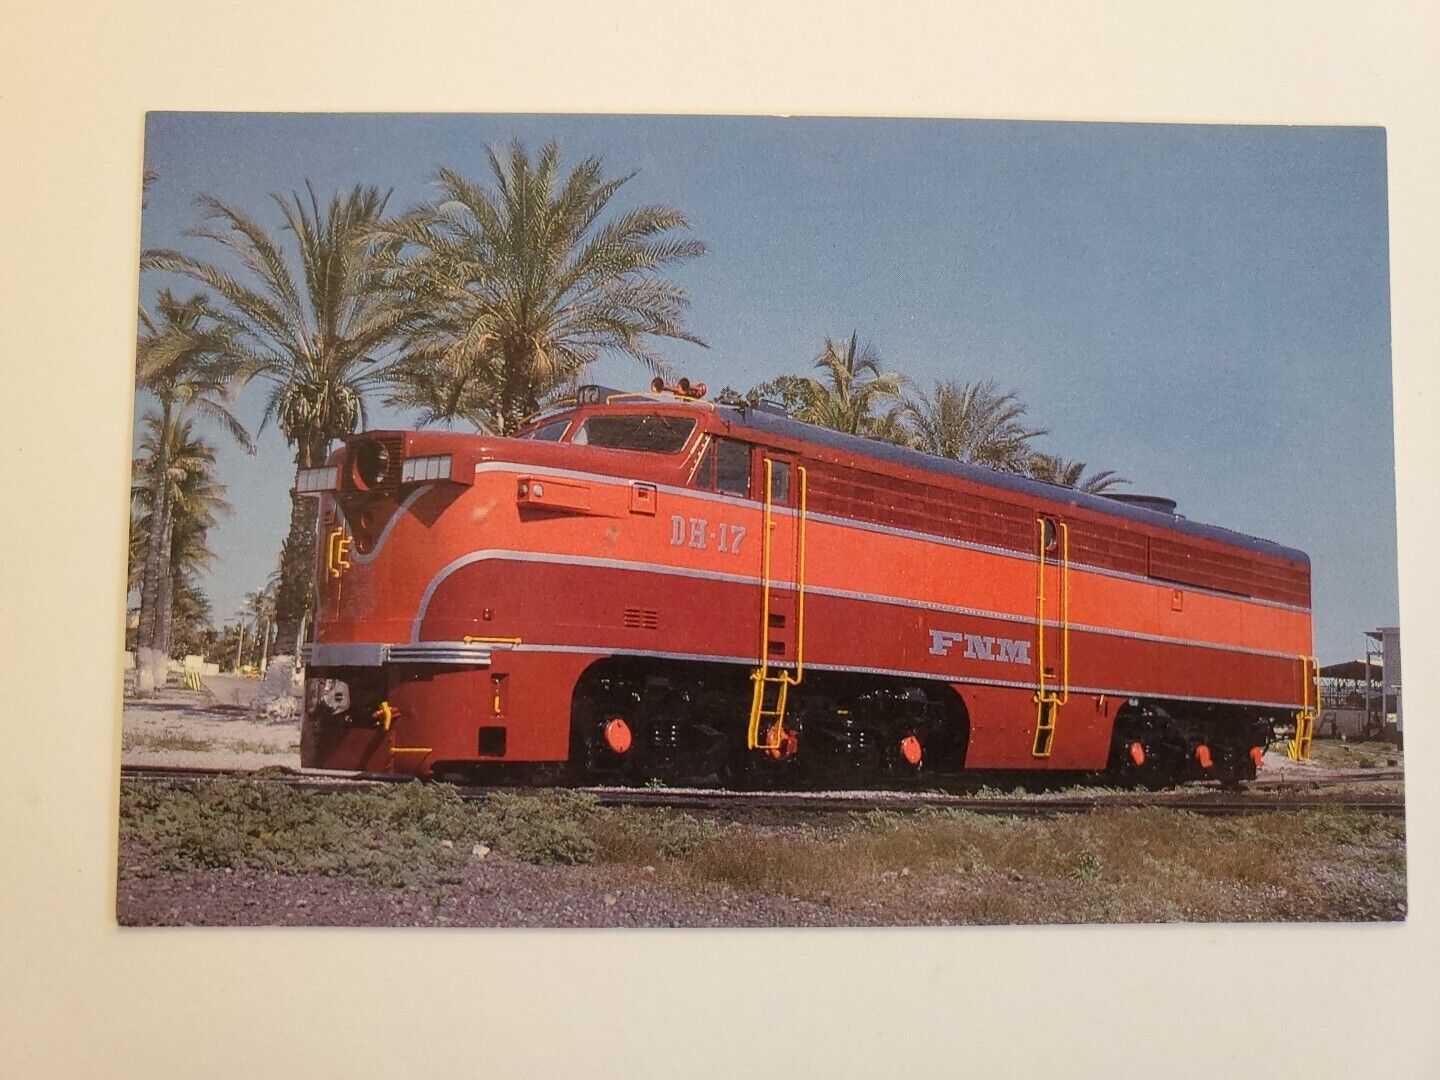 ferrocarriles nacionales de mexico Alco PA Locomotive 3x5 Postcard